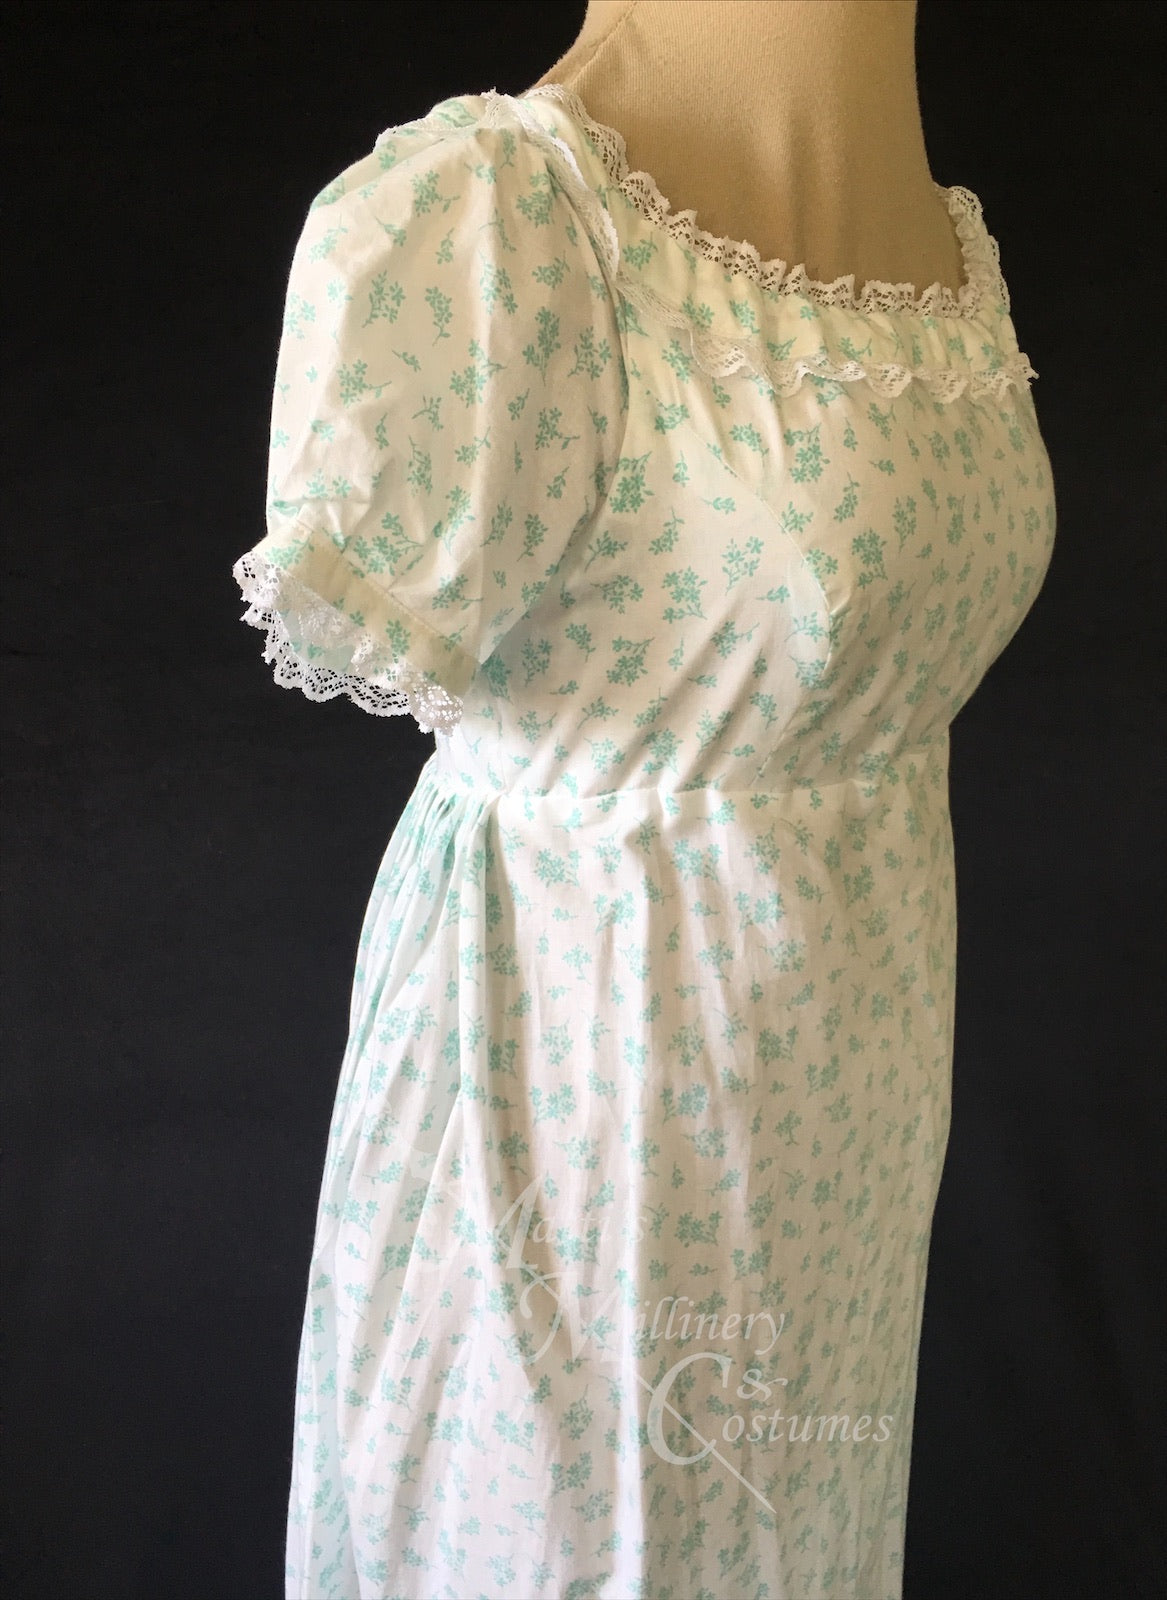 Cotton Regency Jane Austen Day Dress in mint green sprig print